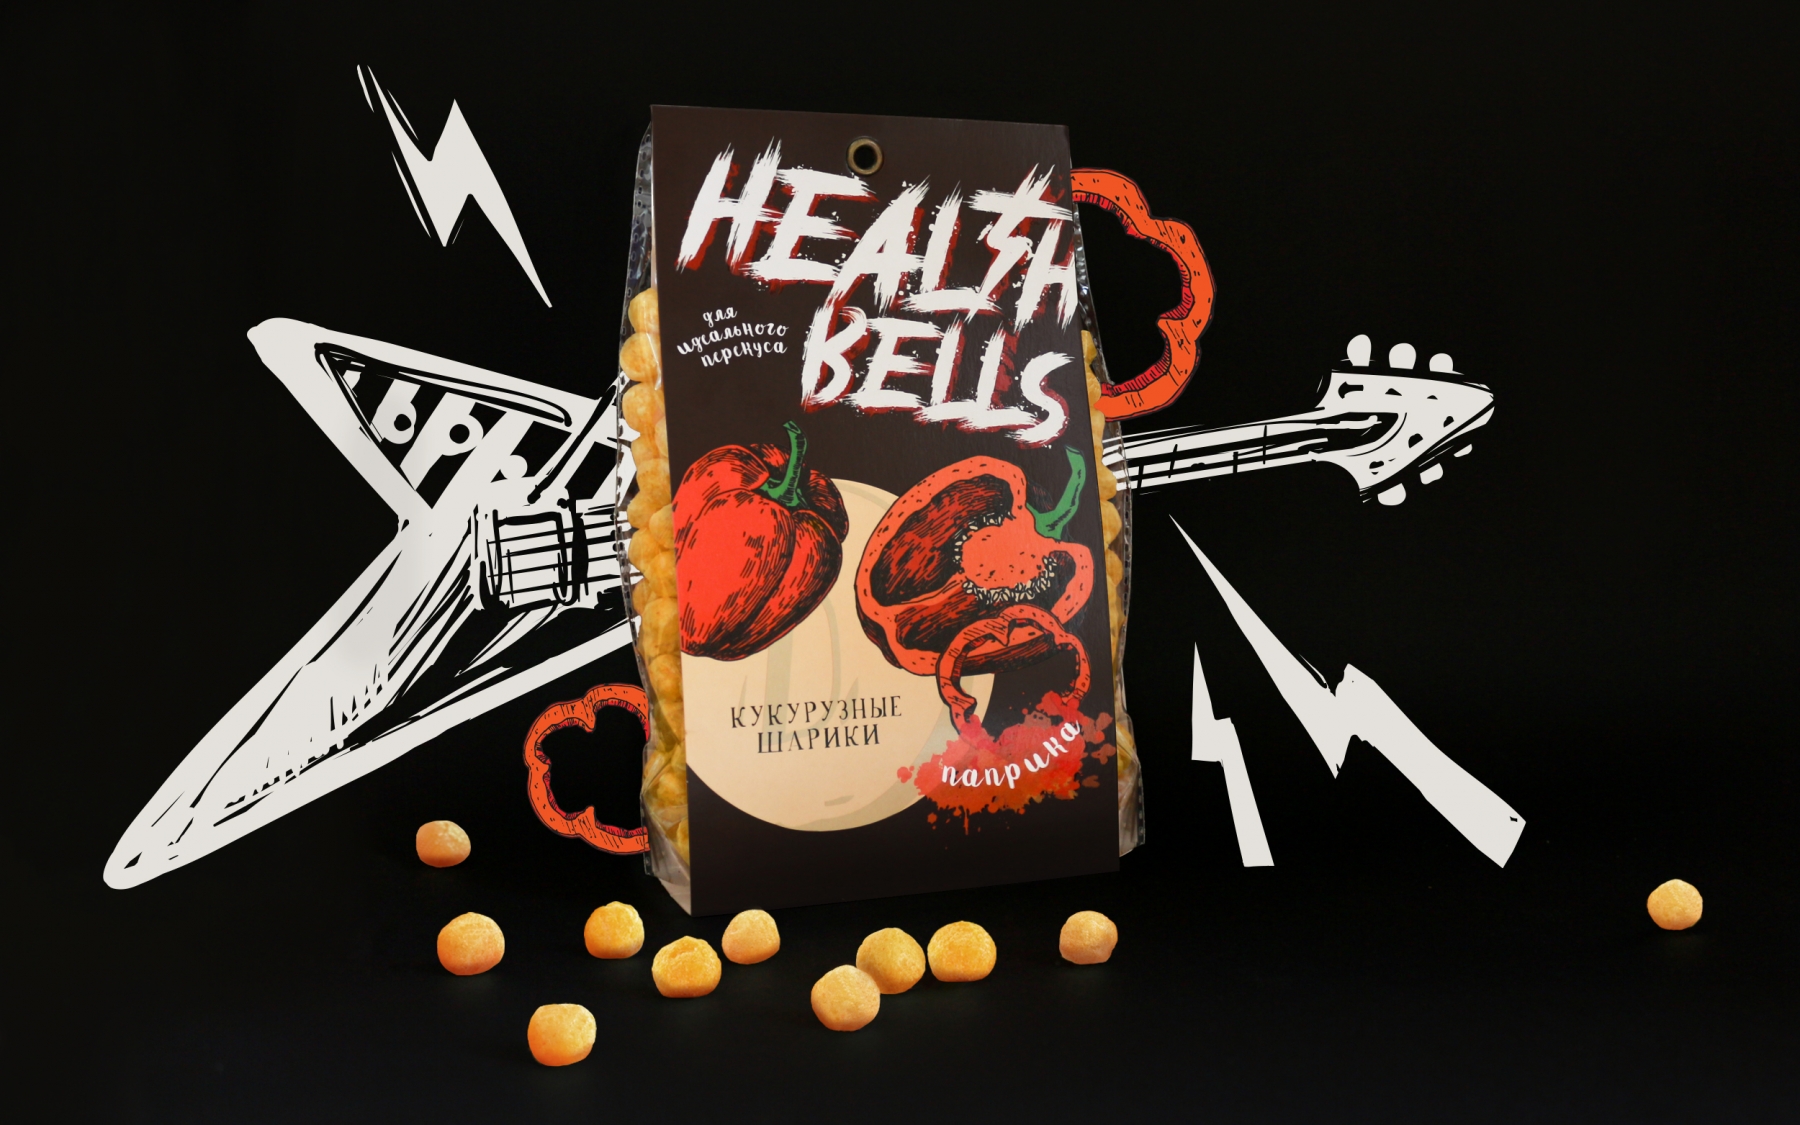 Разработка ТМ "Health bells"